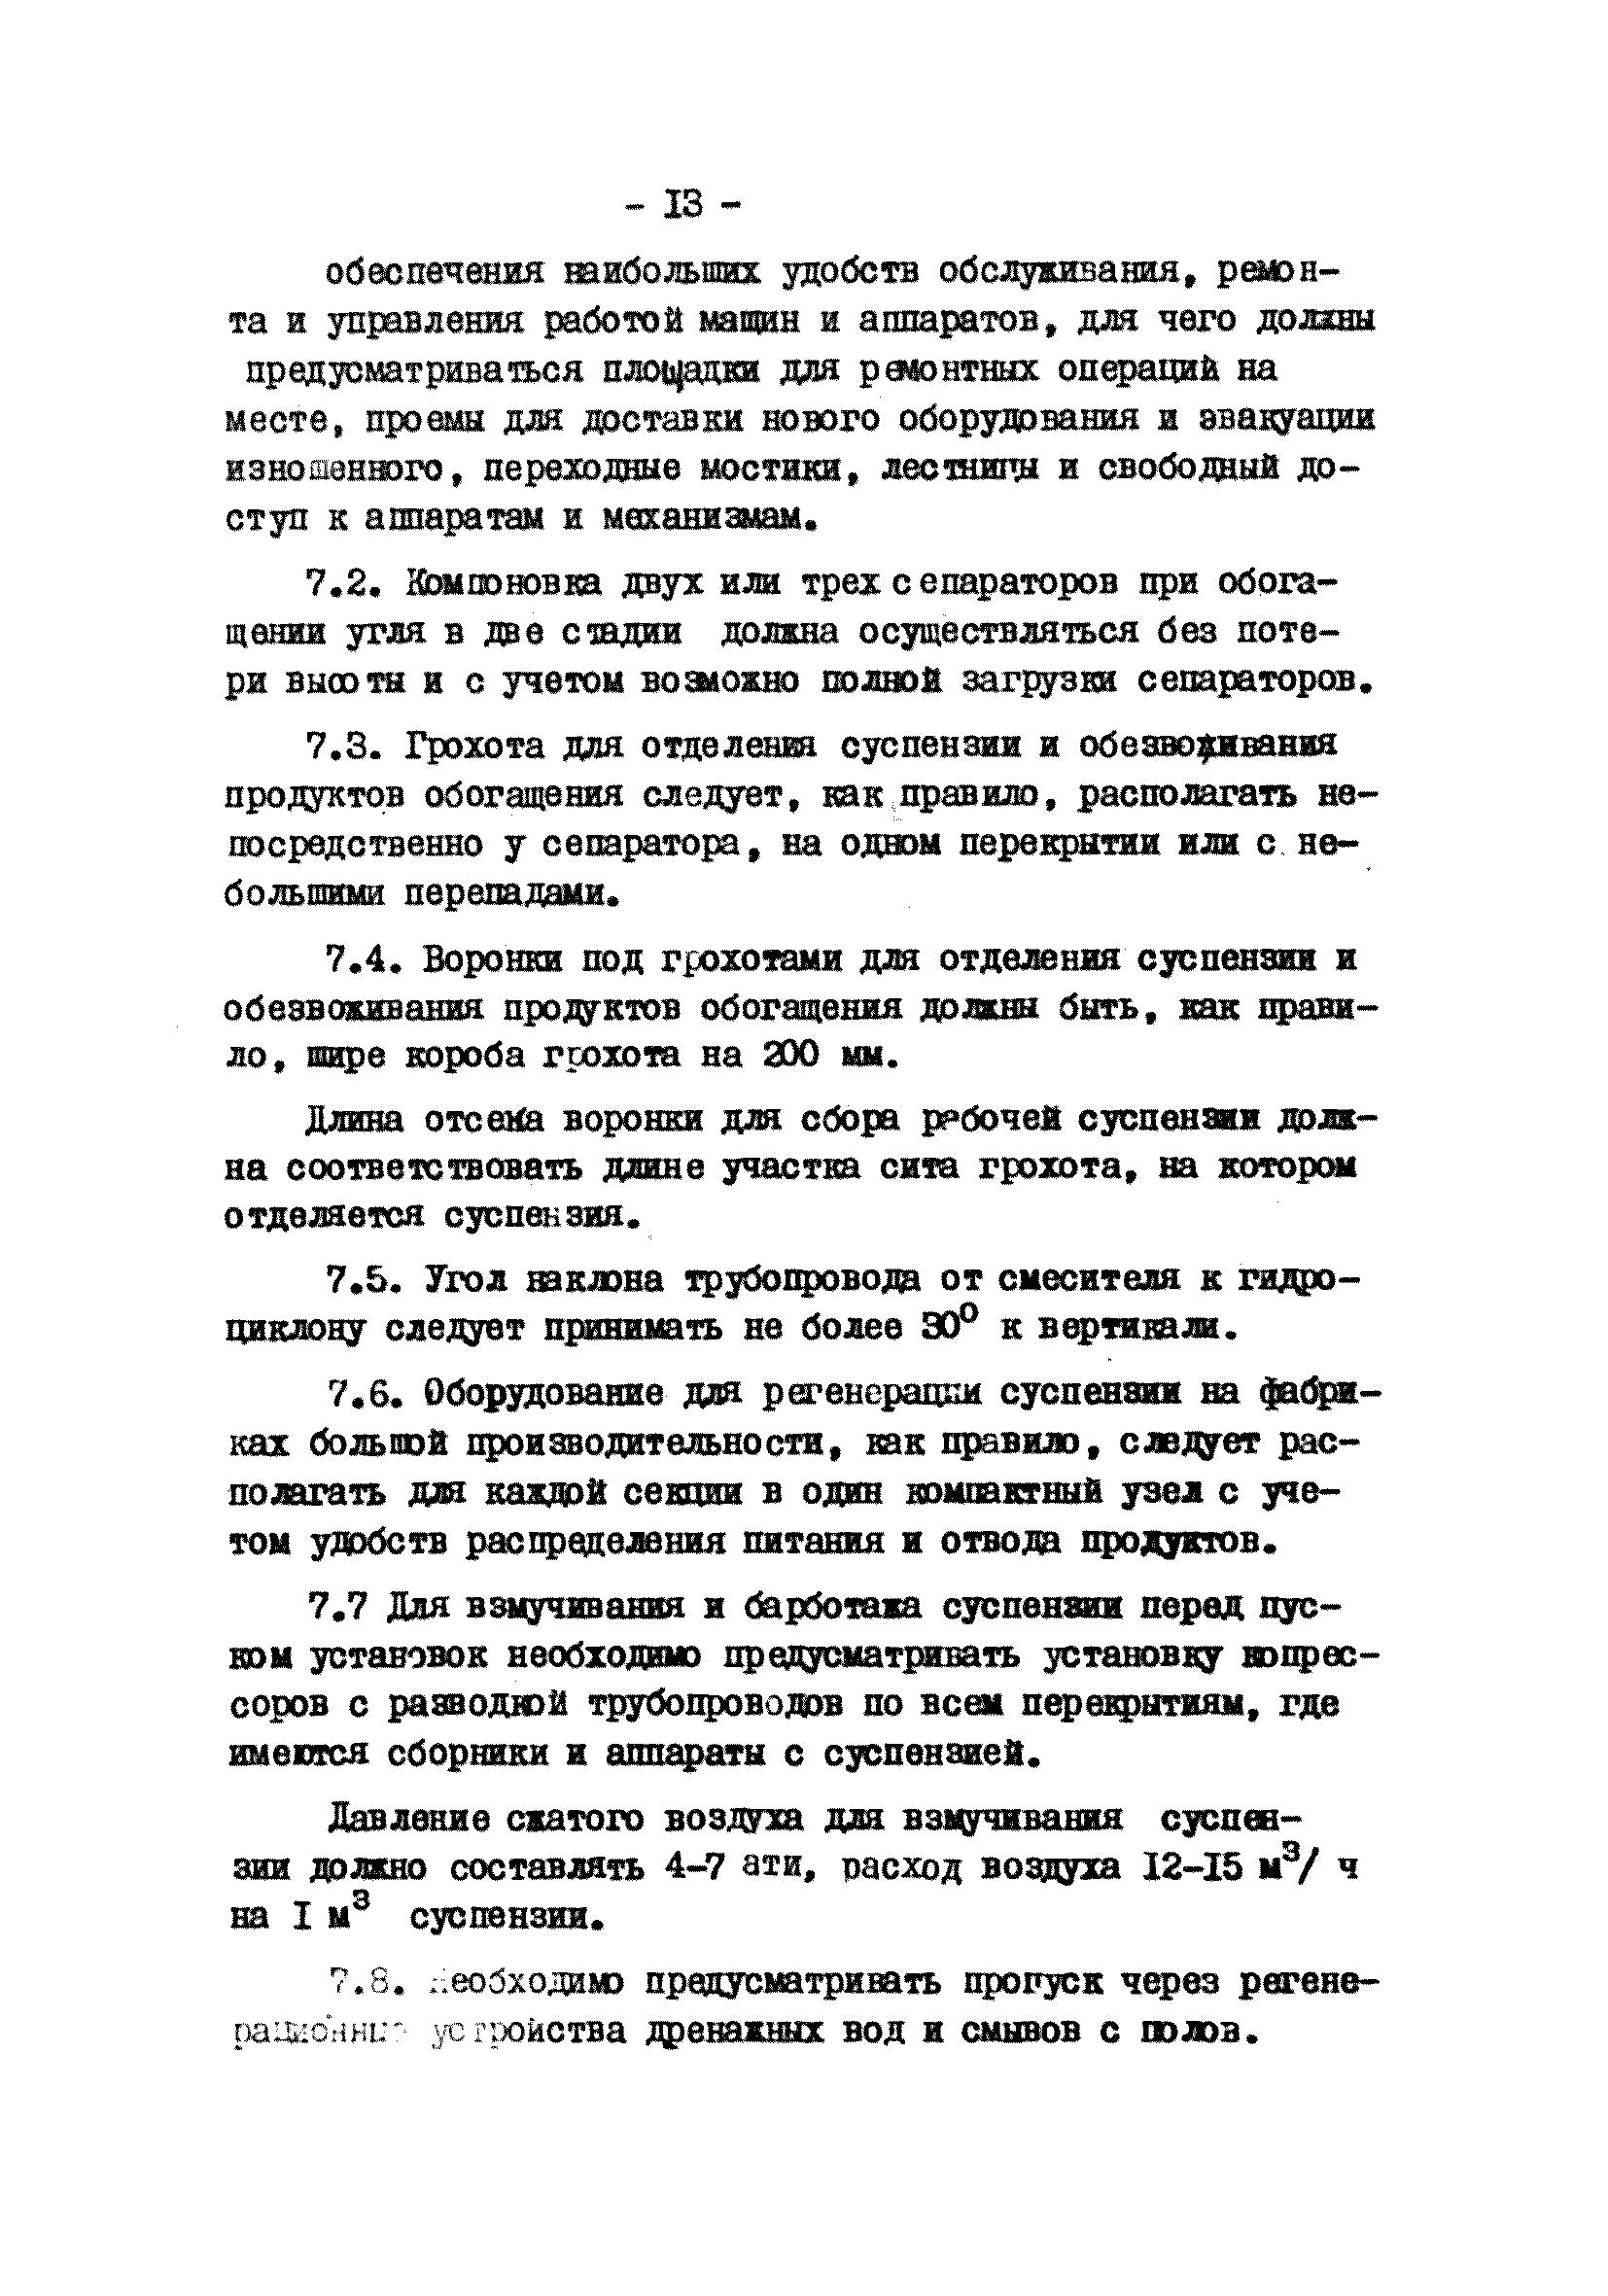 ВНТП 8-77